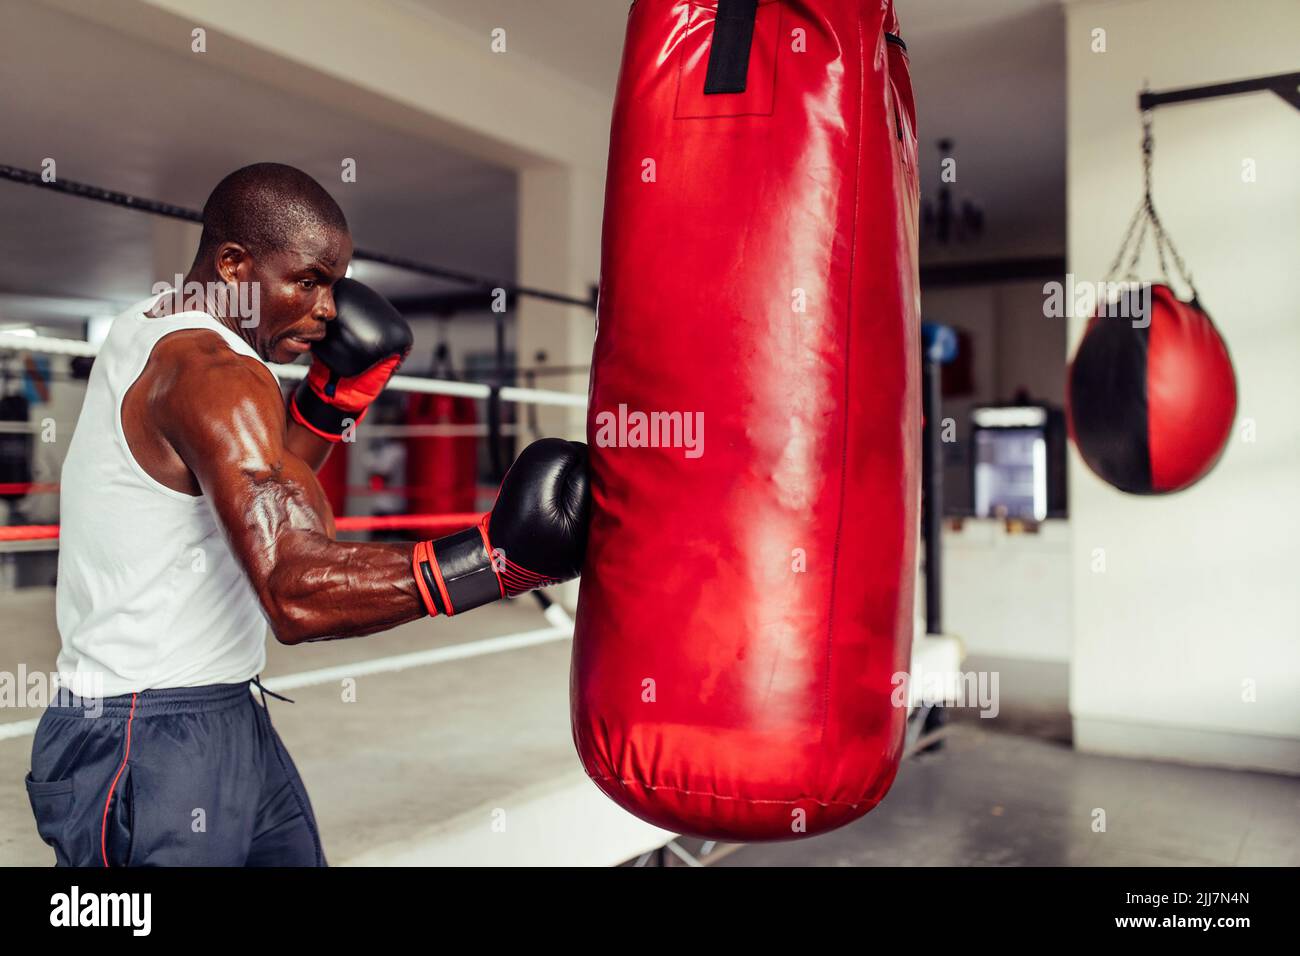 Muskulöser afrikanischer Boxer übt seine Schläge auf einem roten Boxsack aus Leder. Sport junger Mann, der eine Trainingseinheit in einer Boxhalle hat. Stockfoto